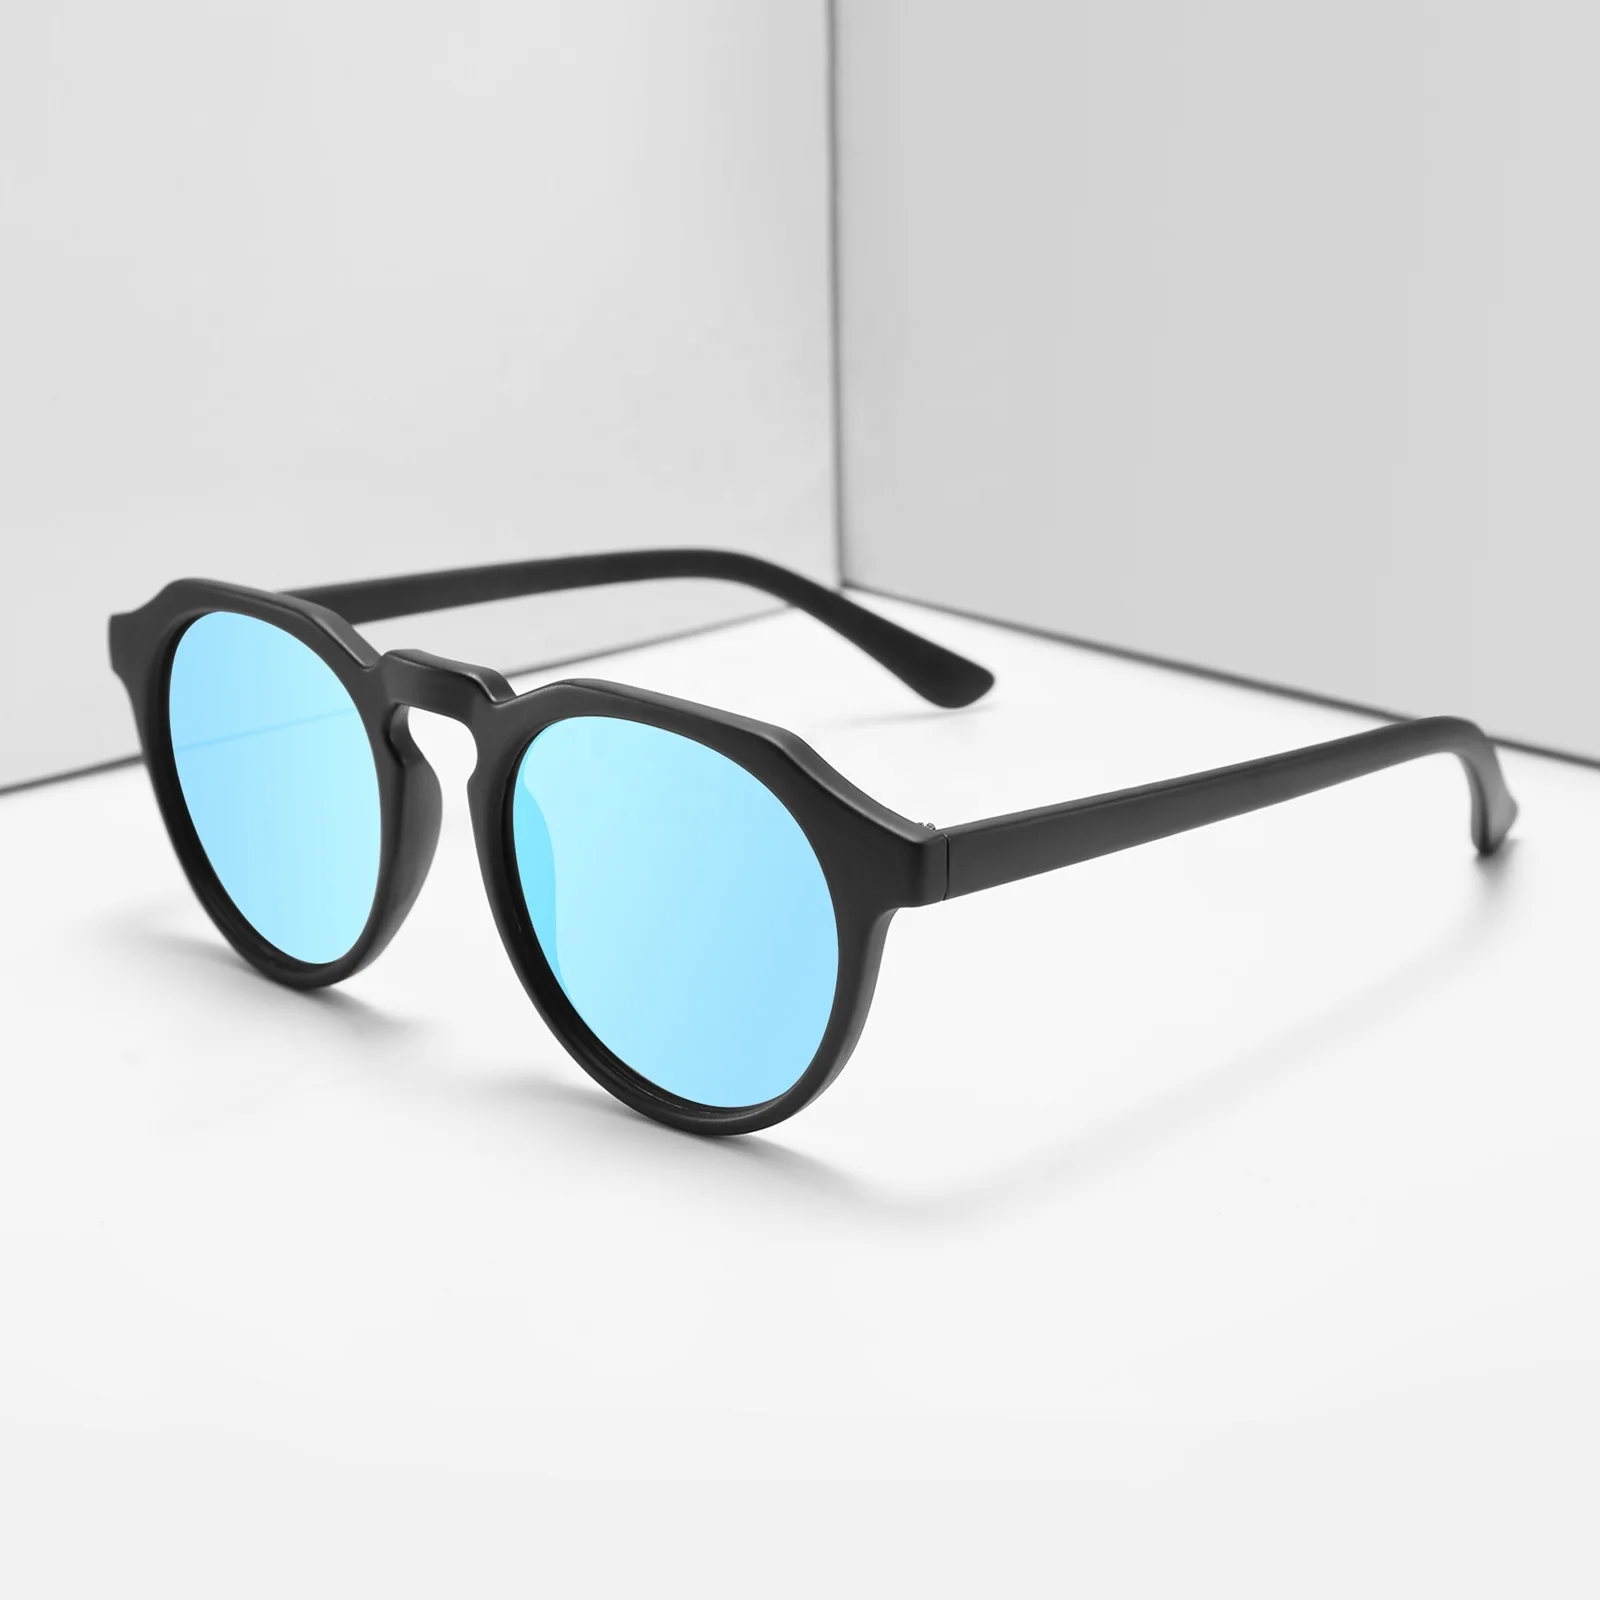 

Gafas de Sol Polarizadas Logo Printing Sunglasses Manufacturer 2021 Fashion Round Sunglasses, Custom colors